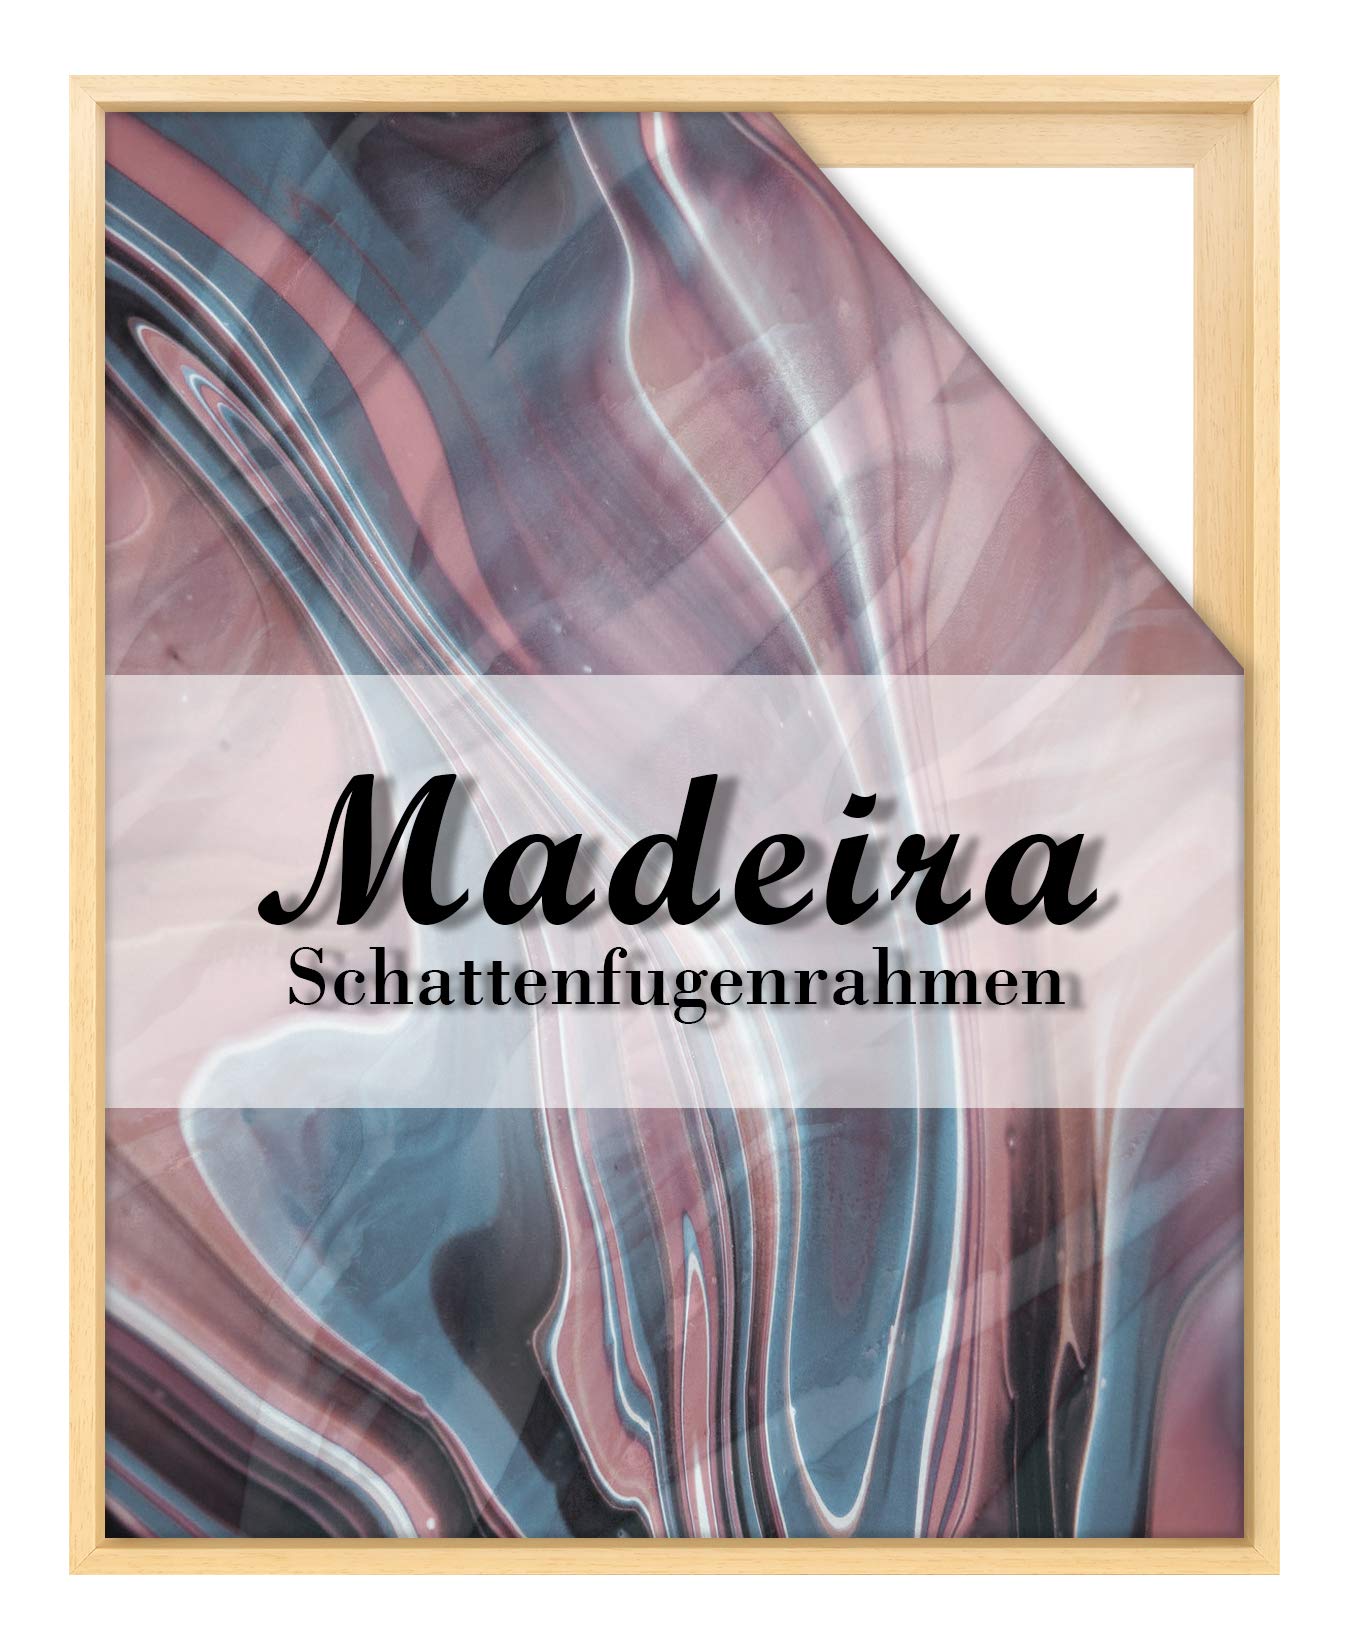 BIRAPA Madeira Schattenfugenrahmen für Leinwand 25x25 cm in Natur Unbehandelt, Holzrahmen, Rahmen für Leinwände, Leerrahmen für Leinwand, Schattenfugenrahmen für Keilrahmen